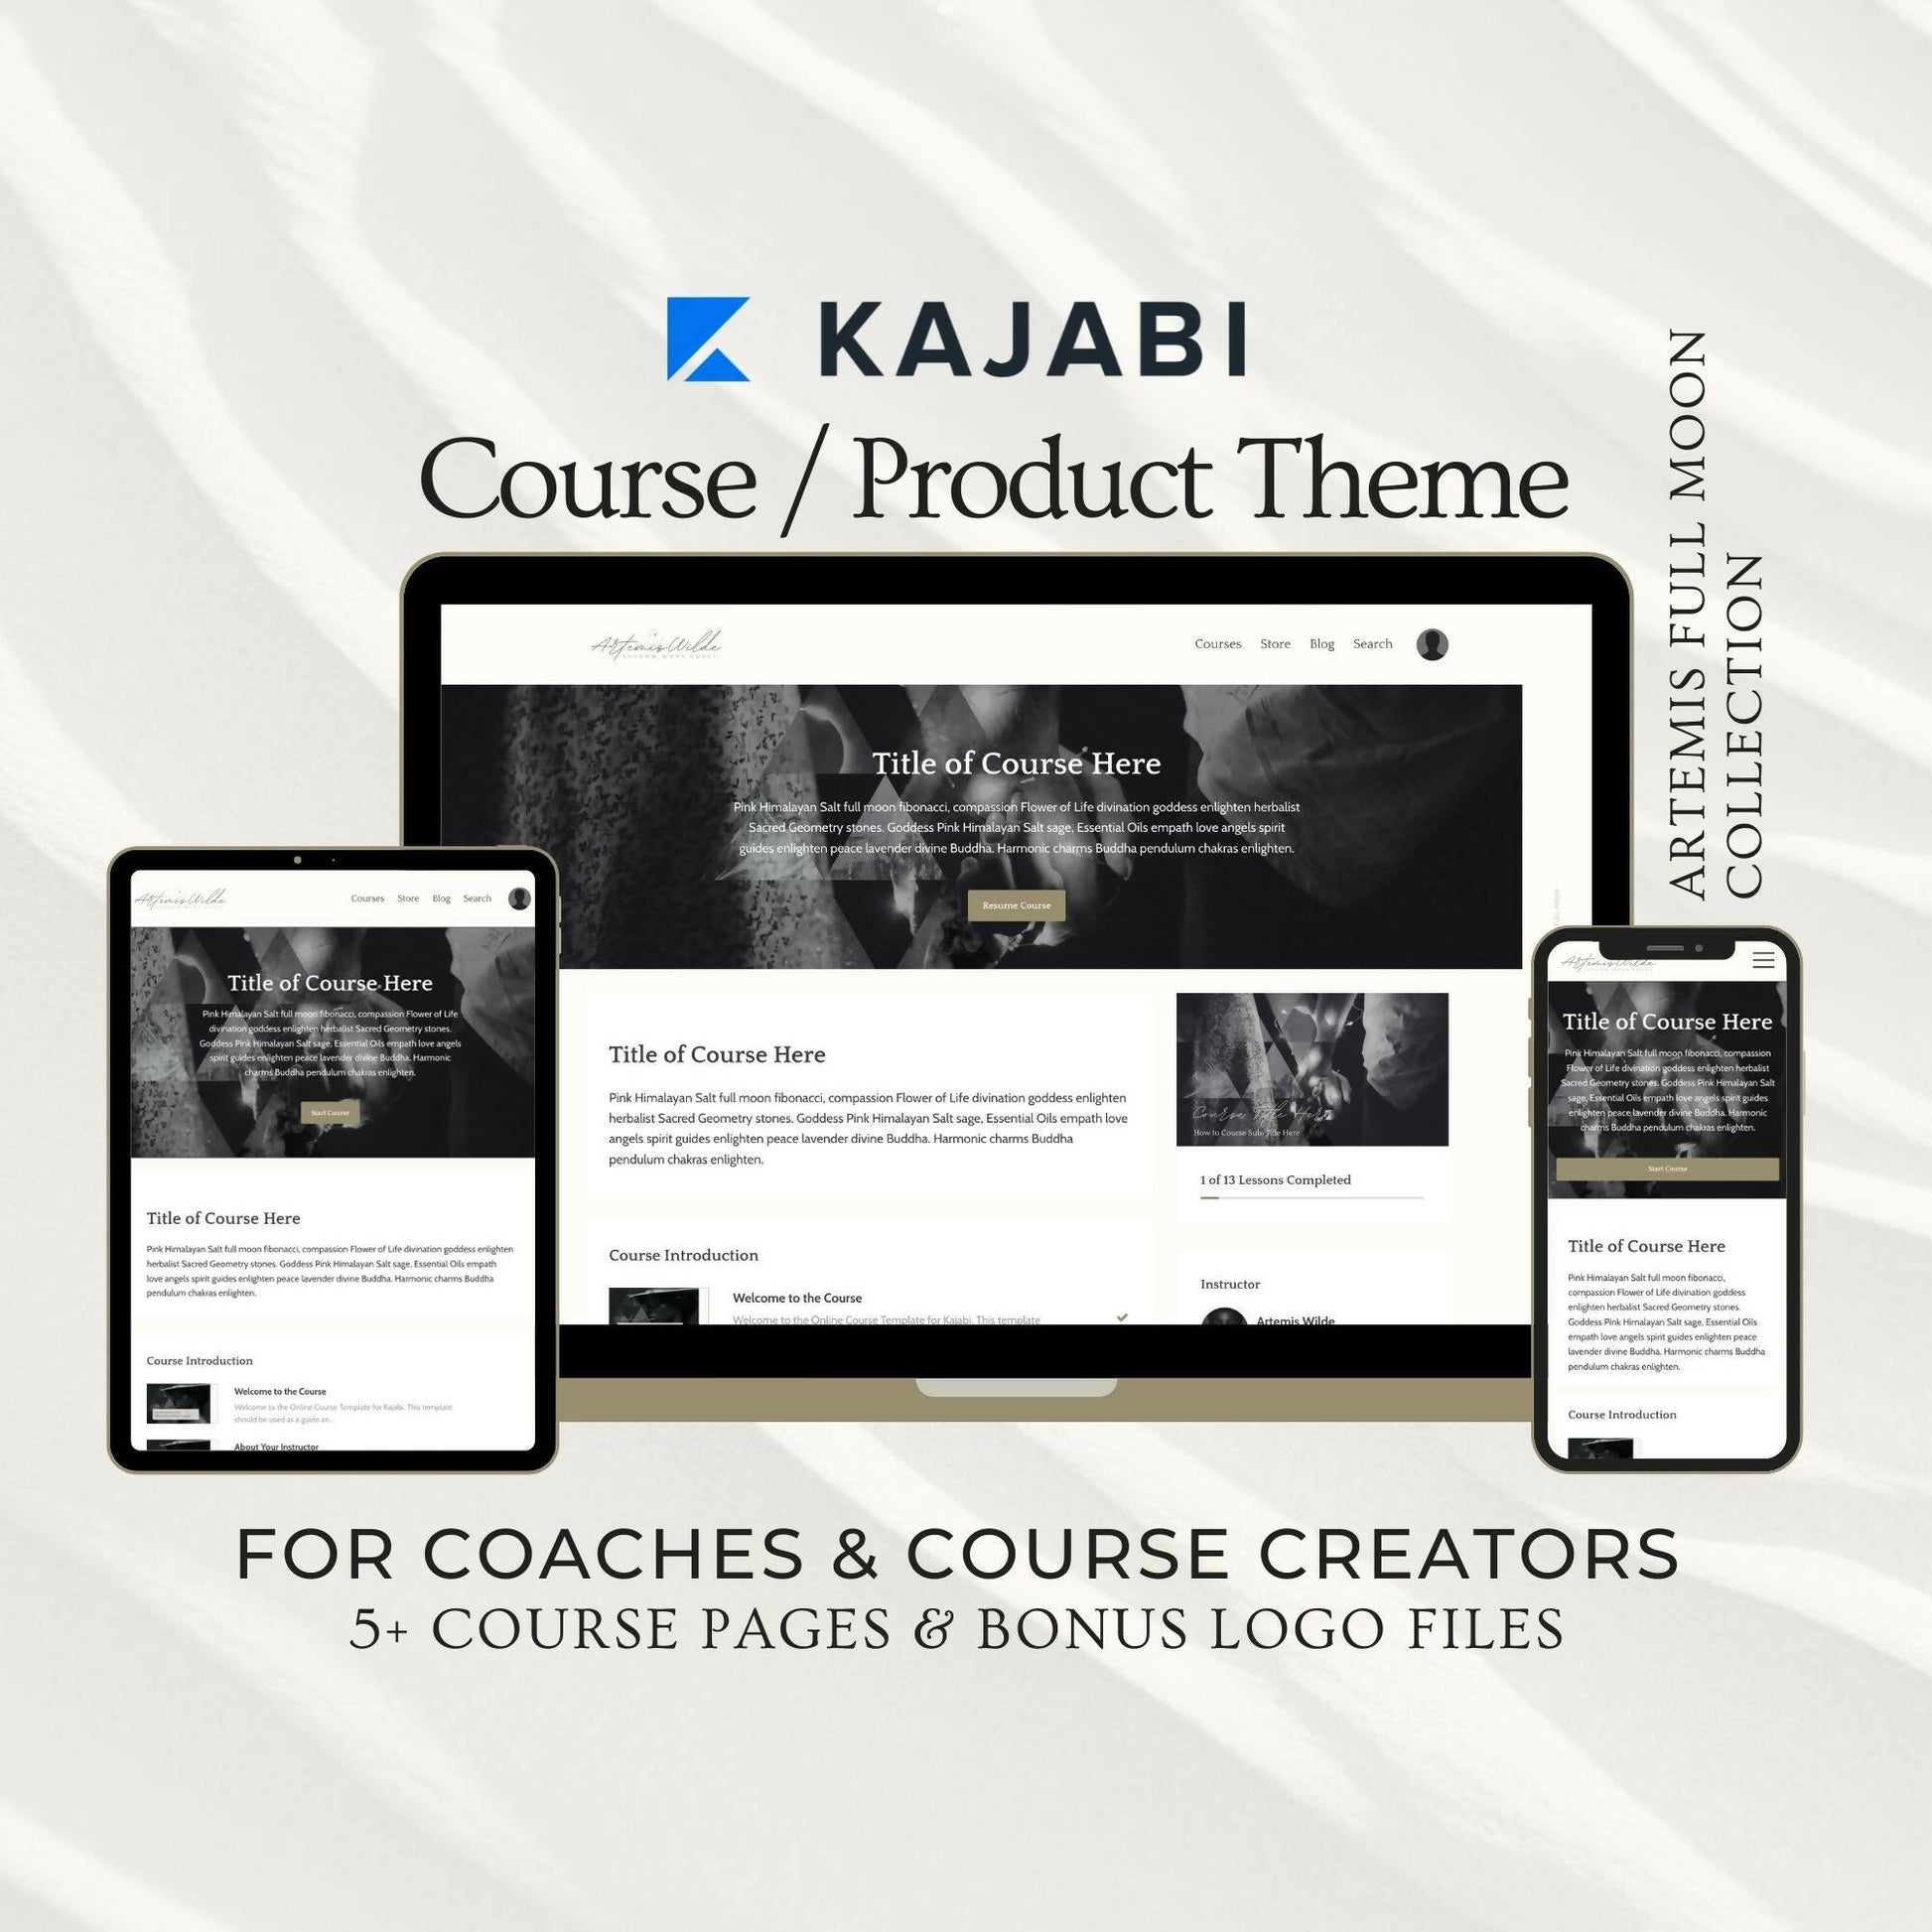 kajabi-course-theme-coach-course-creator01